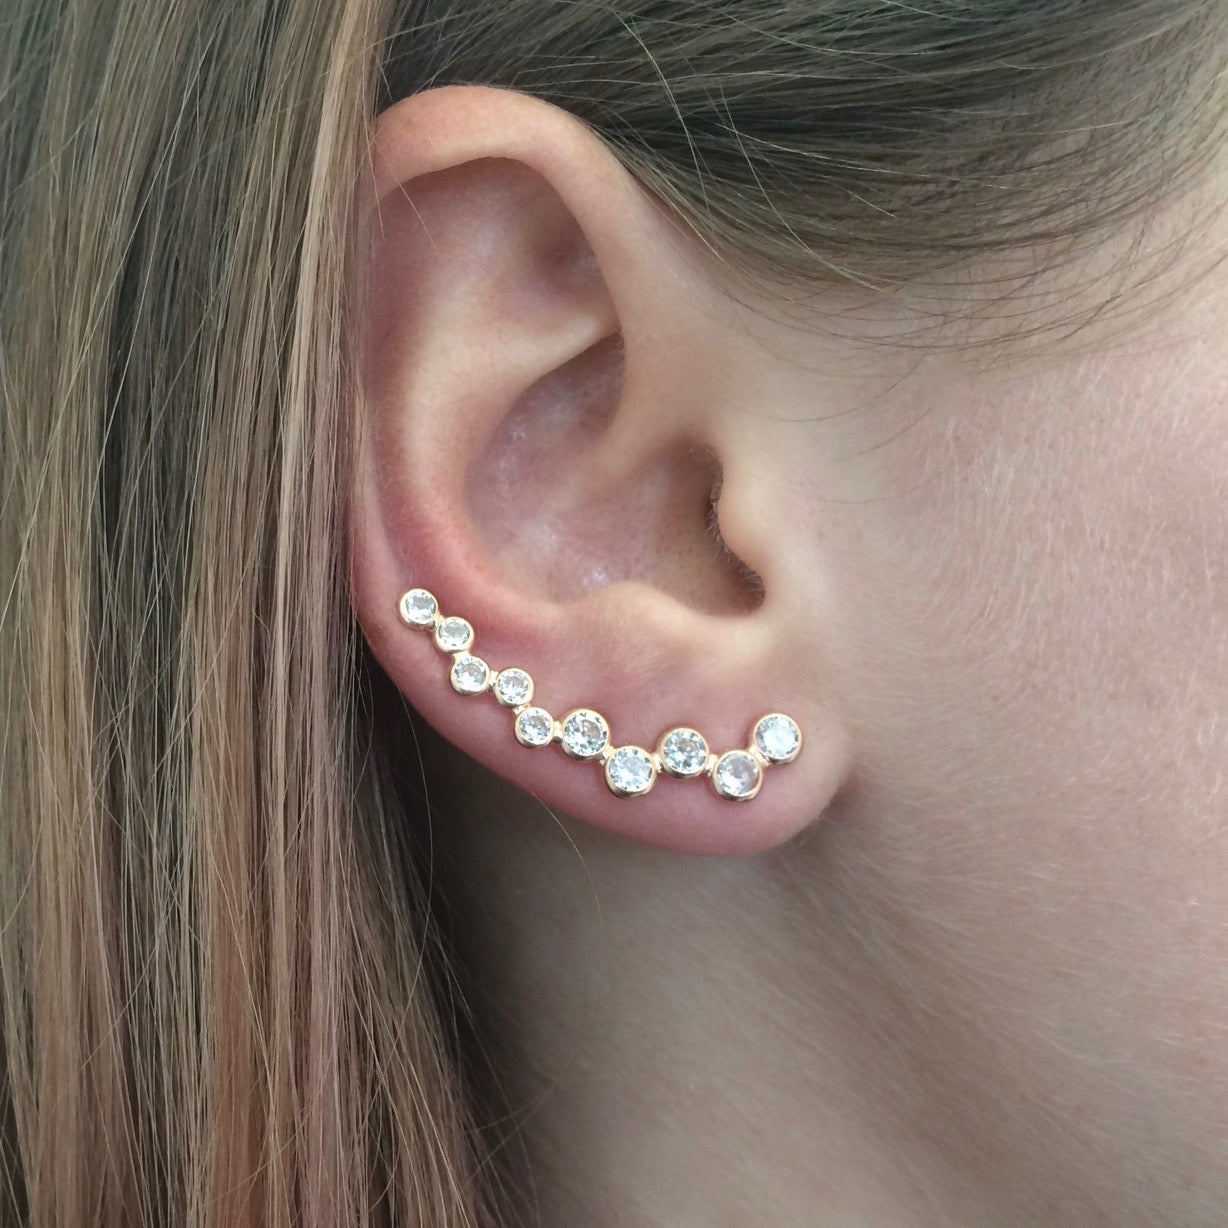 How to Wear Ear Cuffs Like Celebrities in 4 Easy Steps / Amorium Jewelry